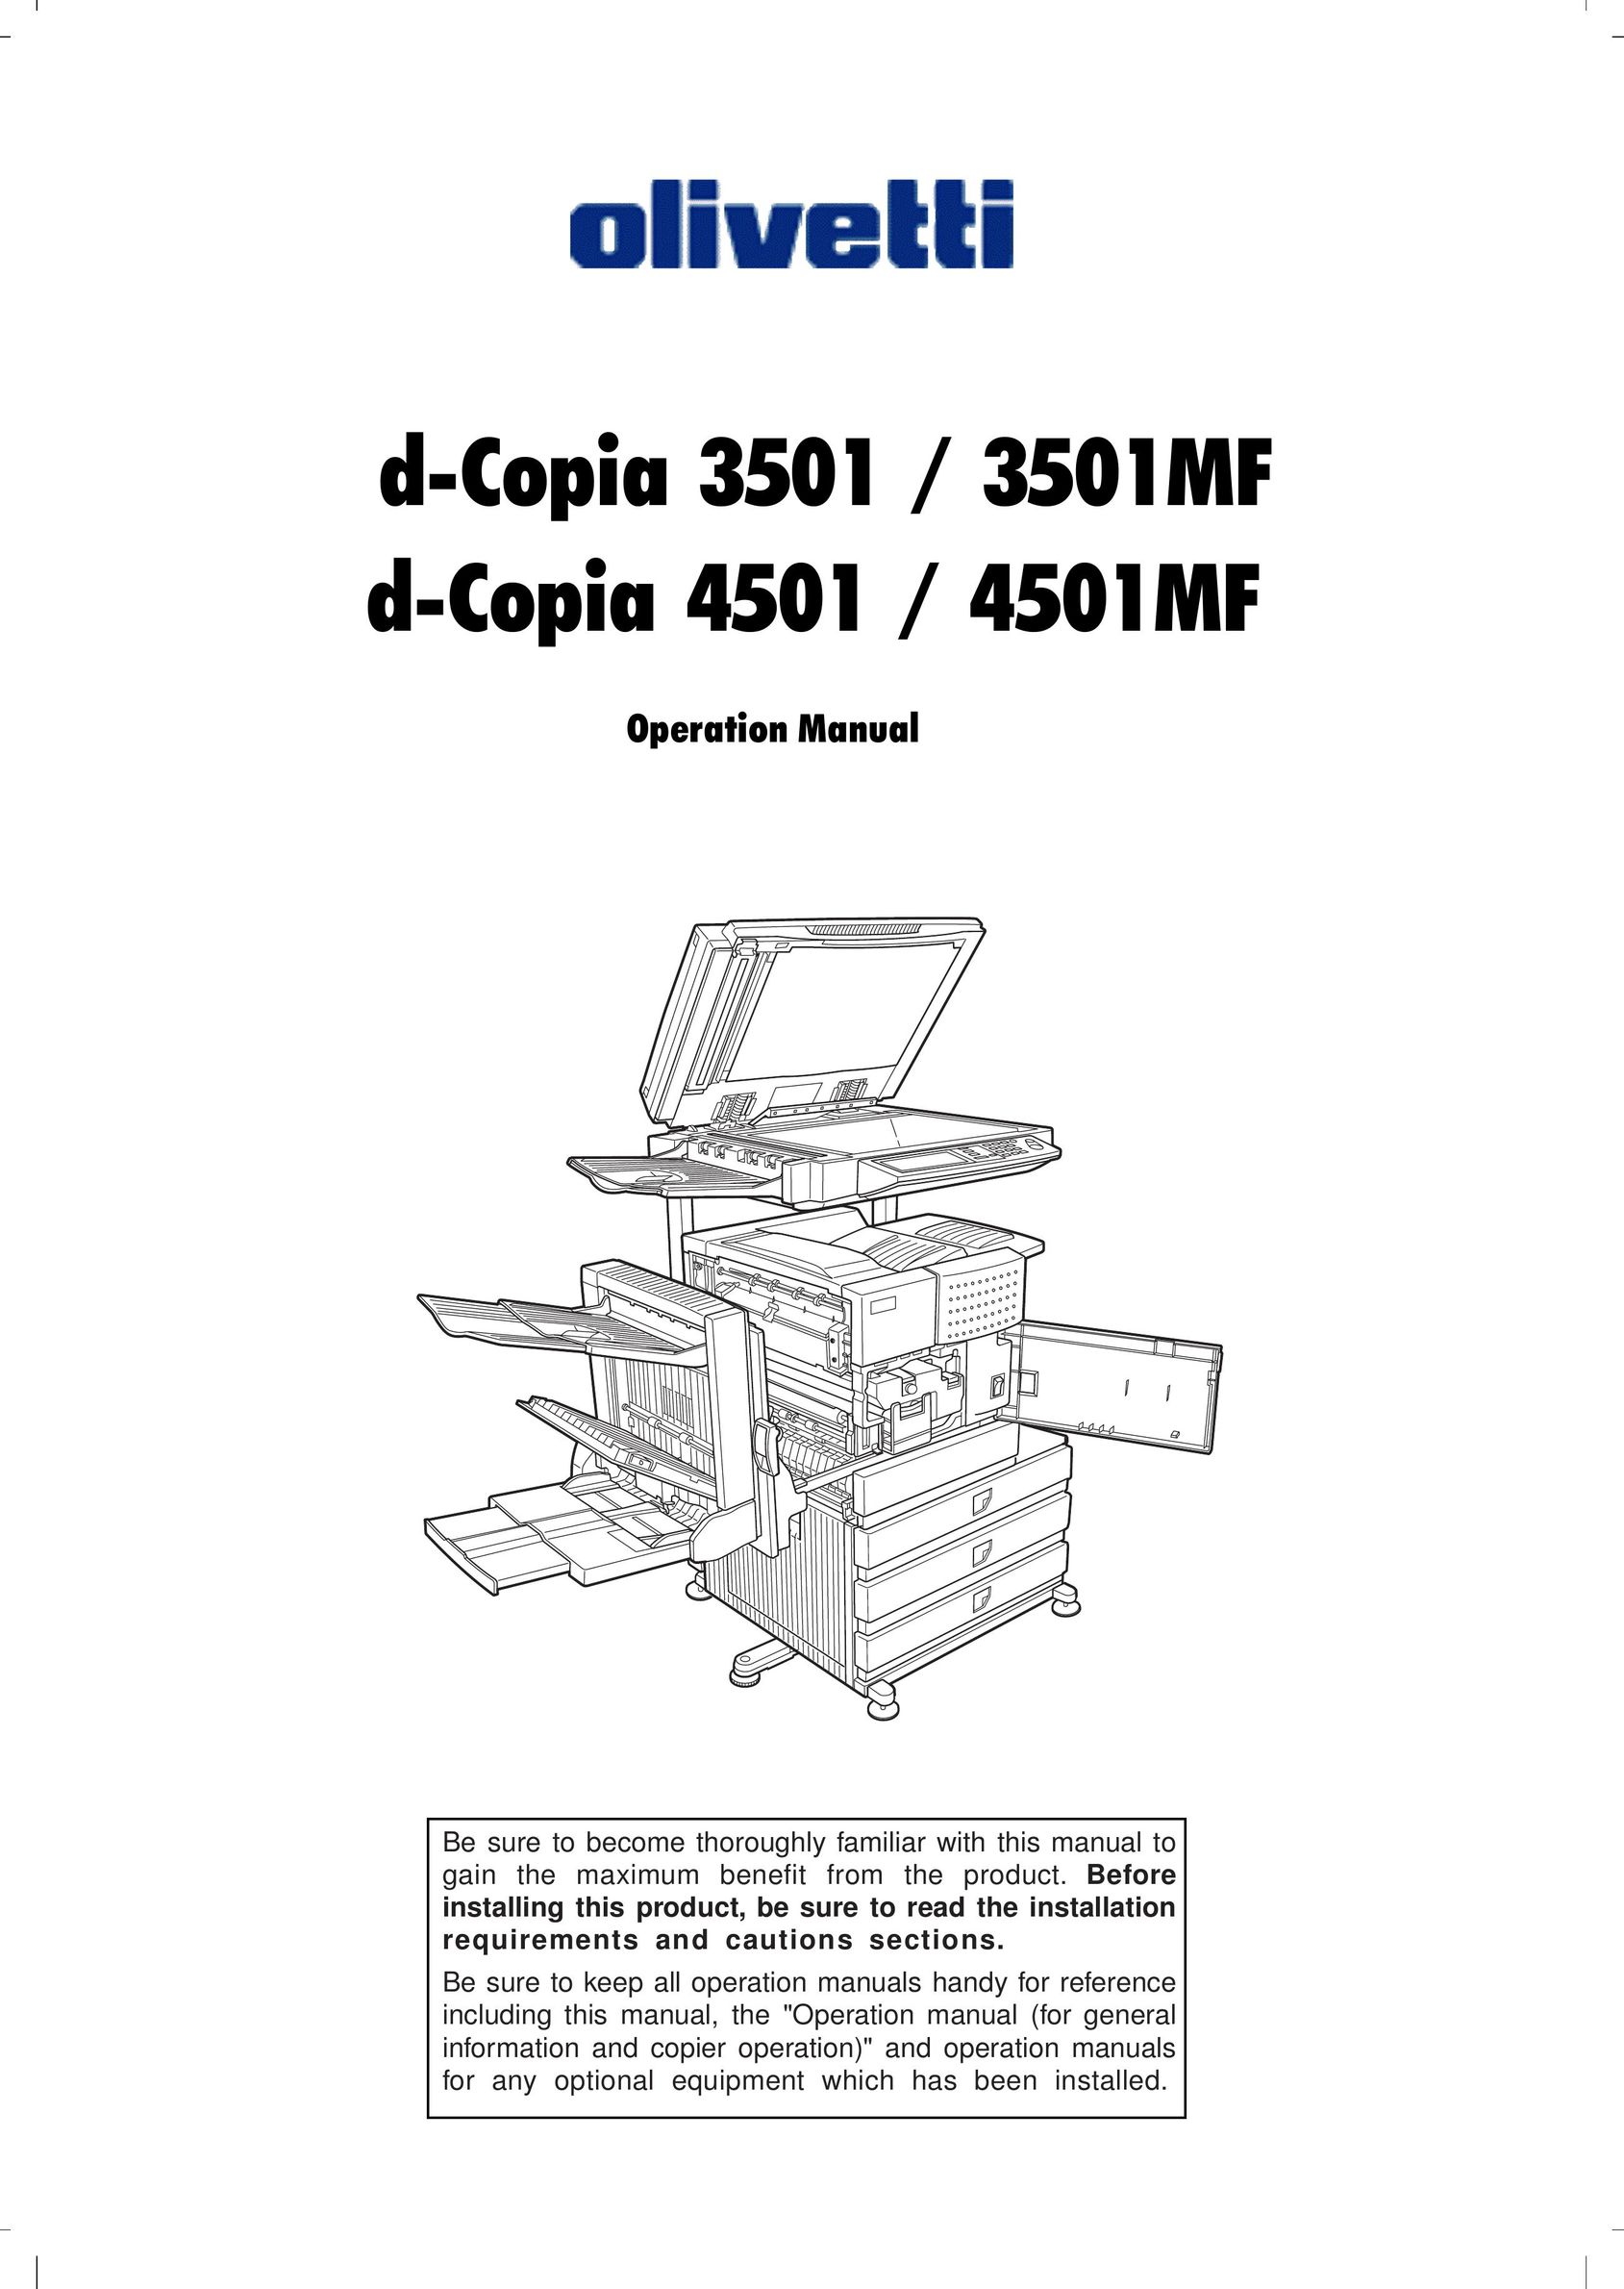 Olivetti 4501 Copier User Manual